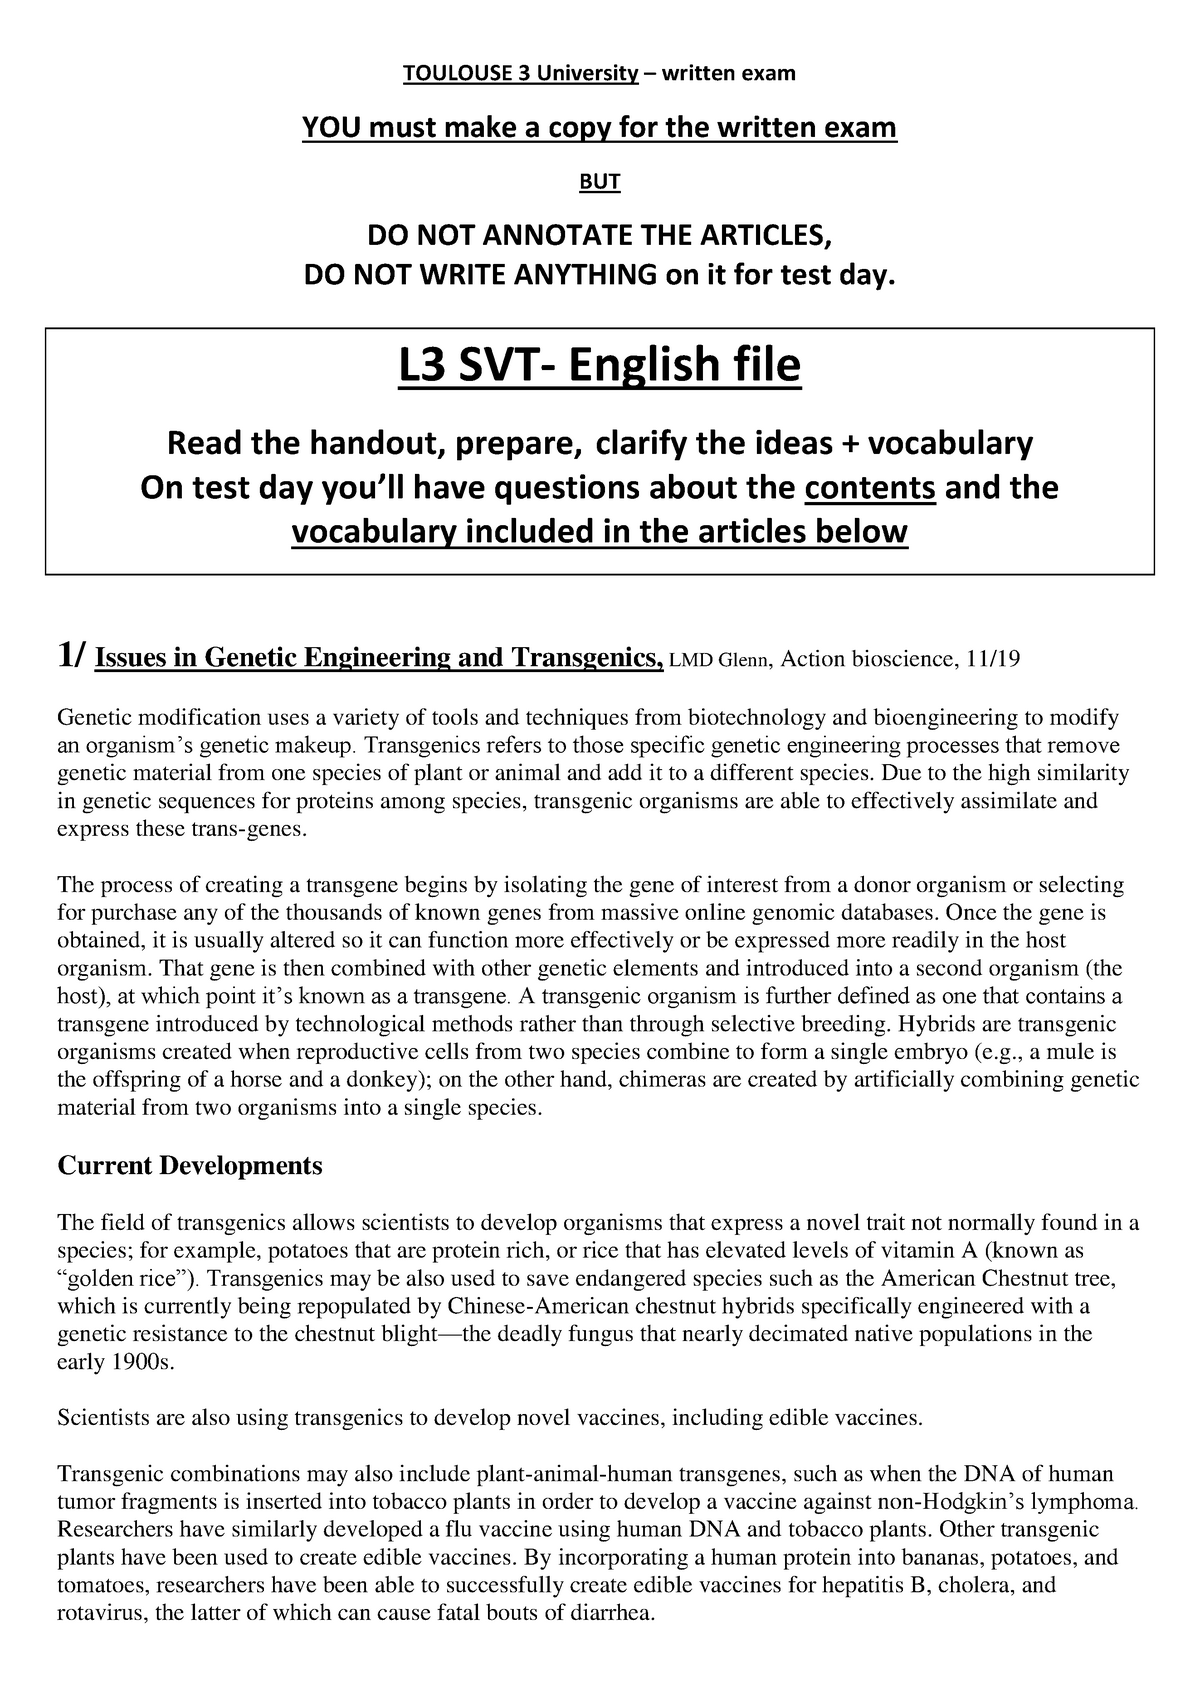 SVT English file - article scientifique TOULOUSE University